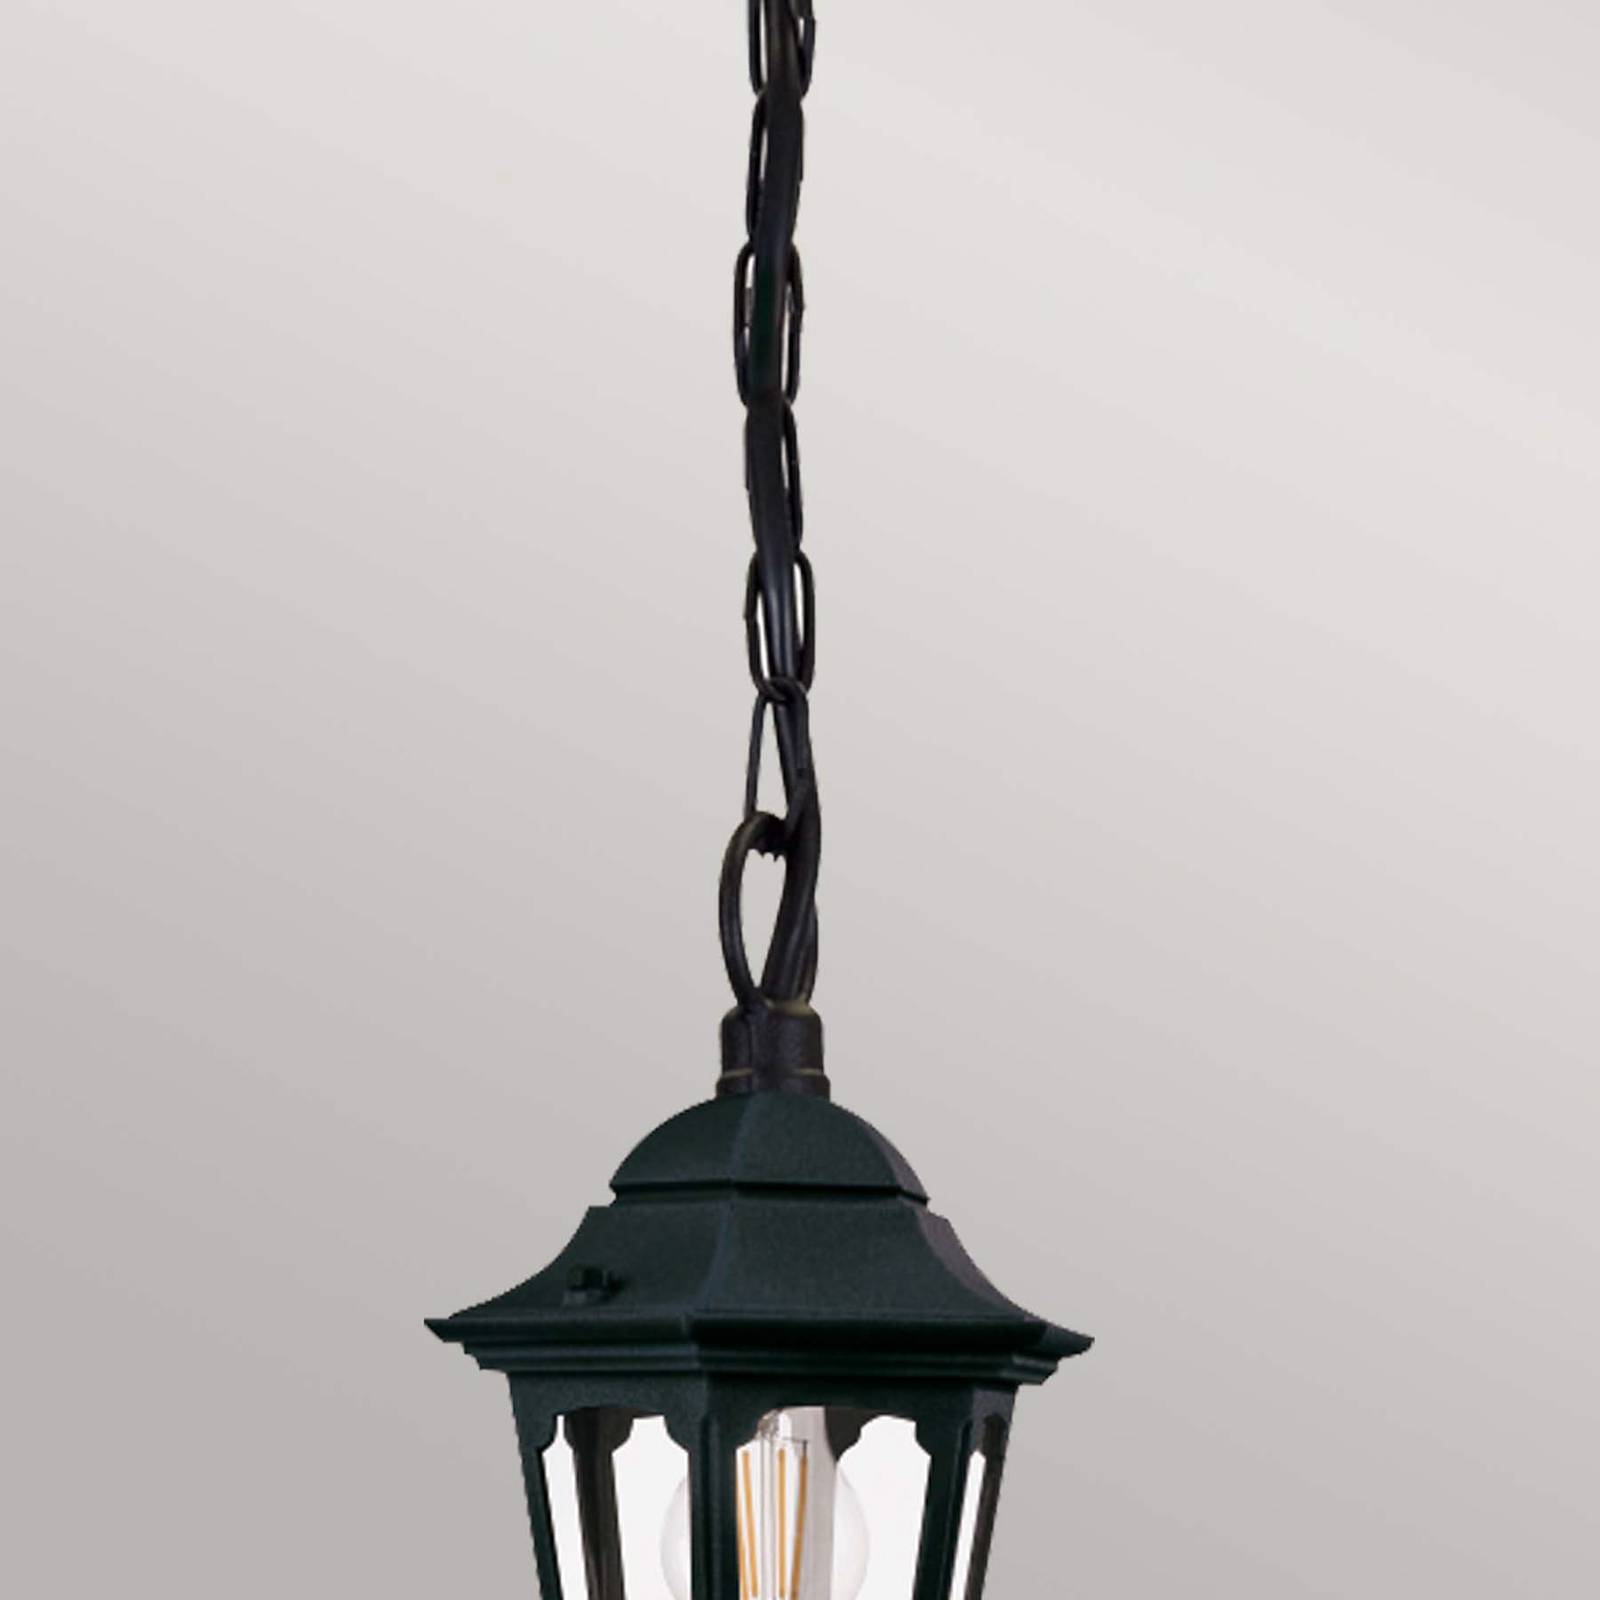 Farské závesné svietidlo so zavesenou reťazou, výška 42 cm